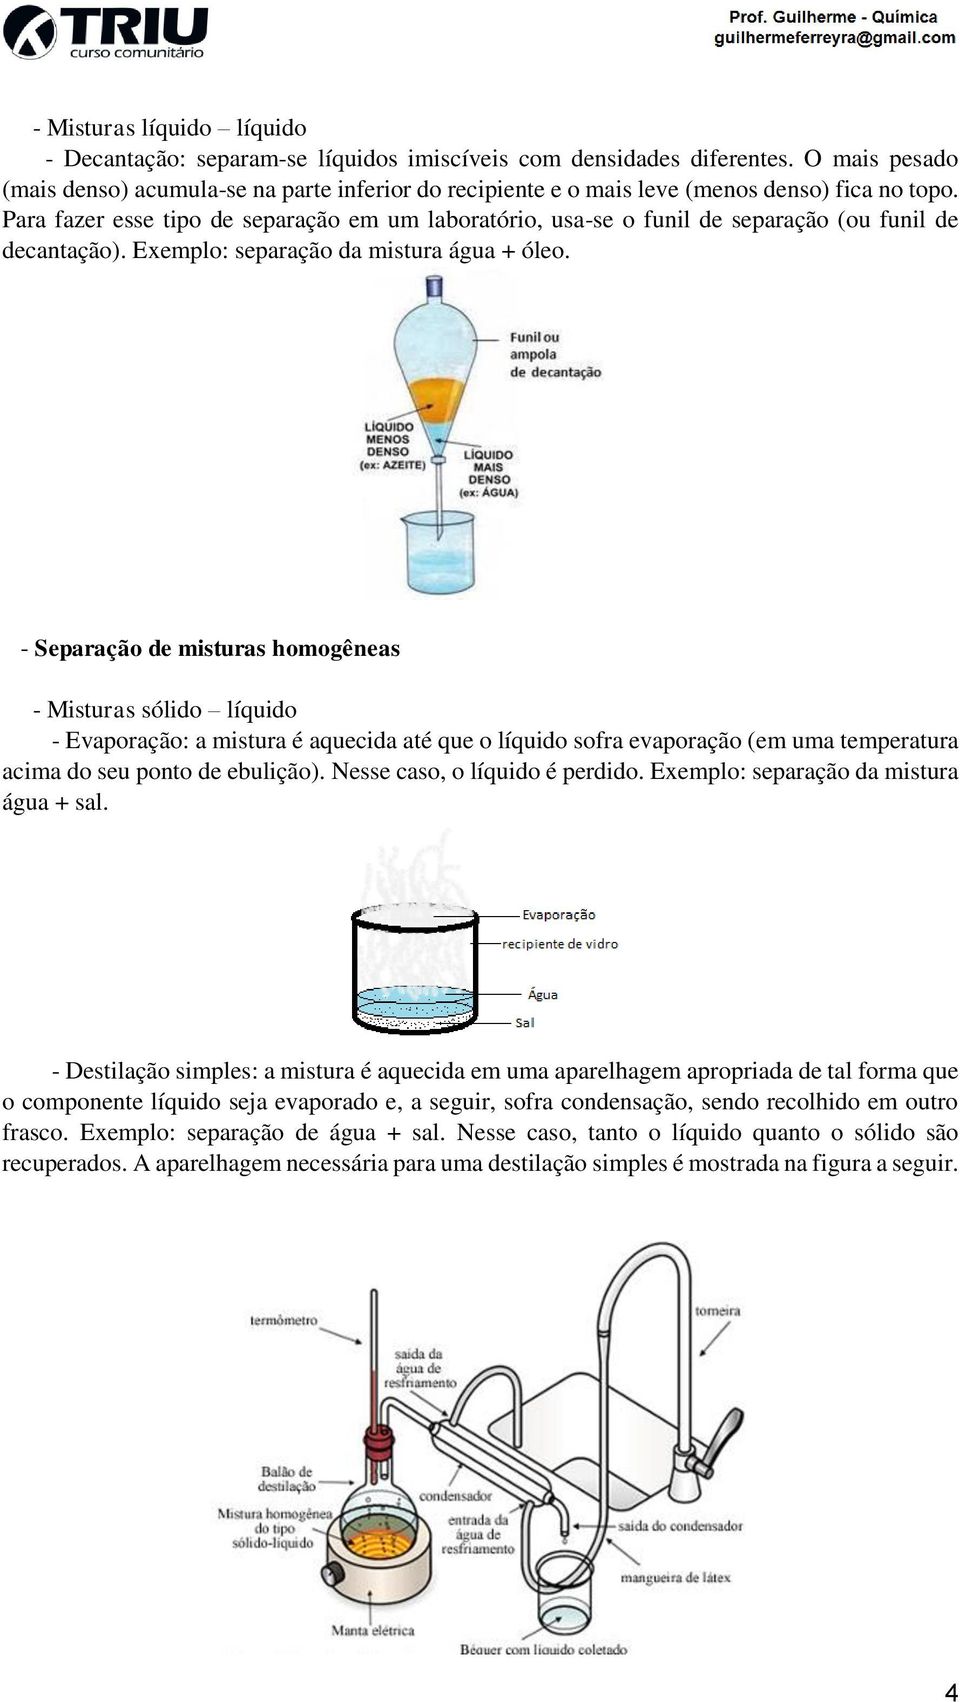 Para fazer esse tipo de separação em um laboratório, usa-se o funil de separação (ou funil de decantação). Exemplo: separação da mistura água + óleo.